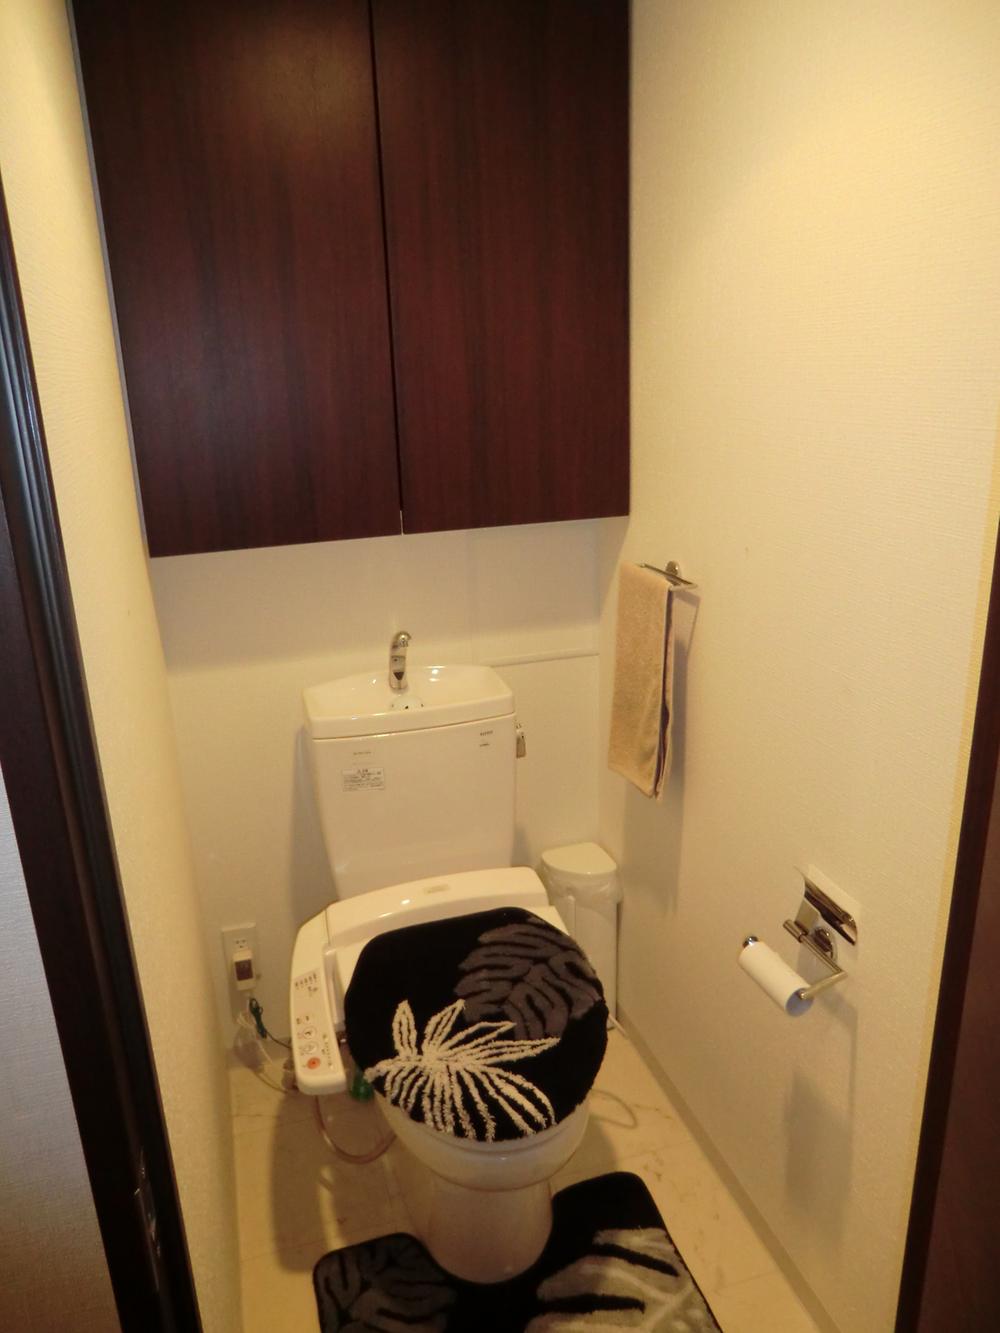 Toilet. Room (August 2011) shooting